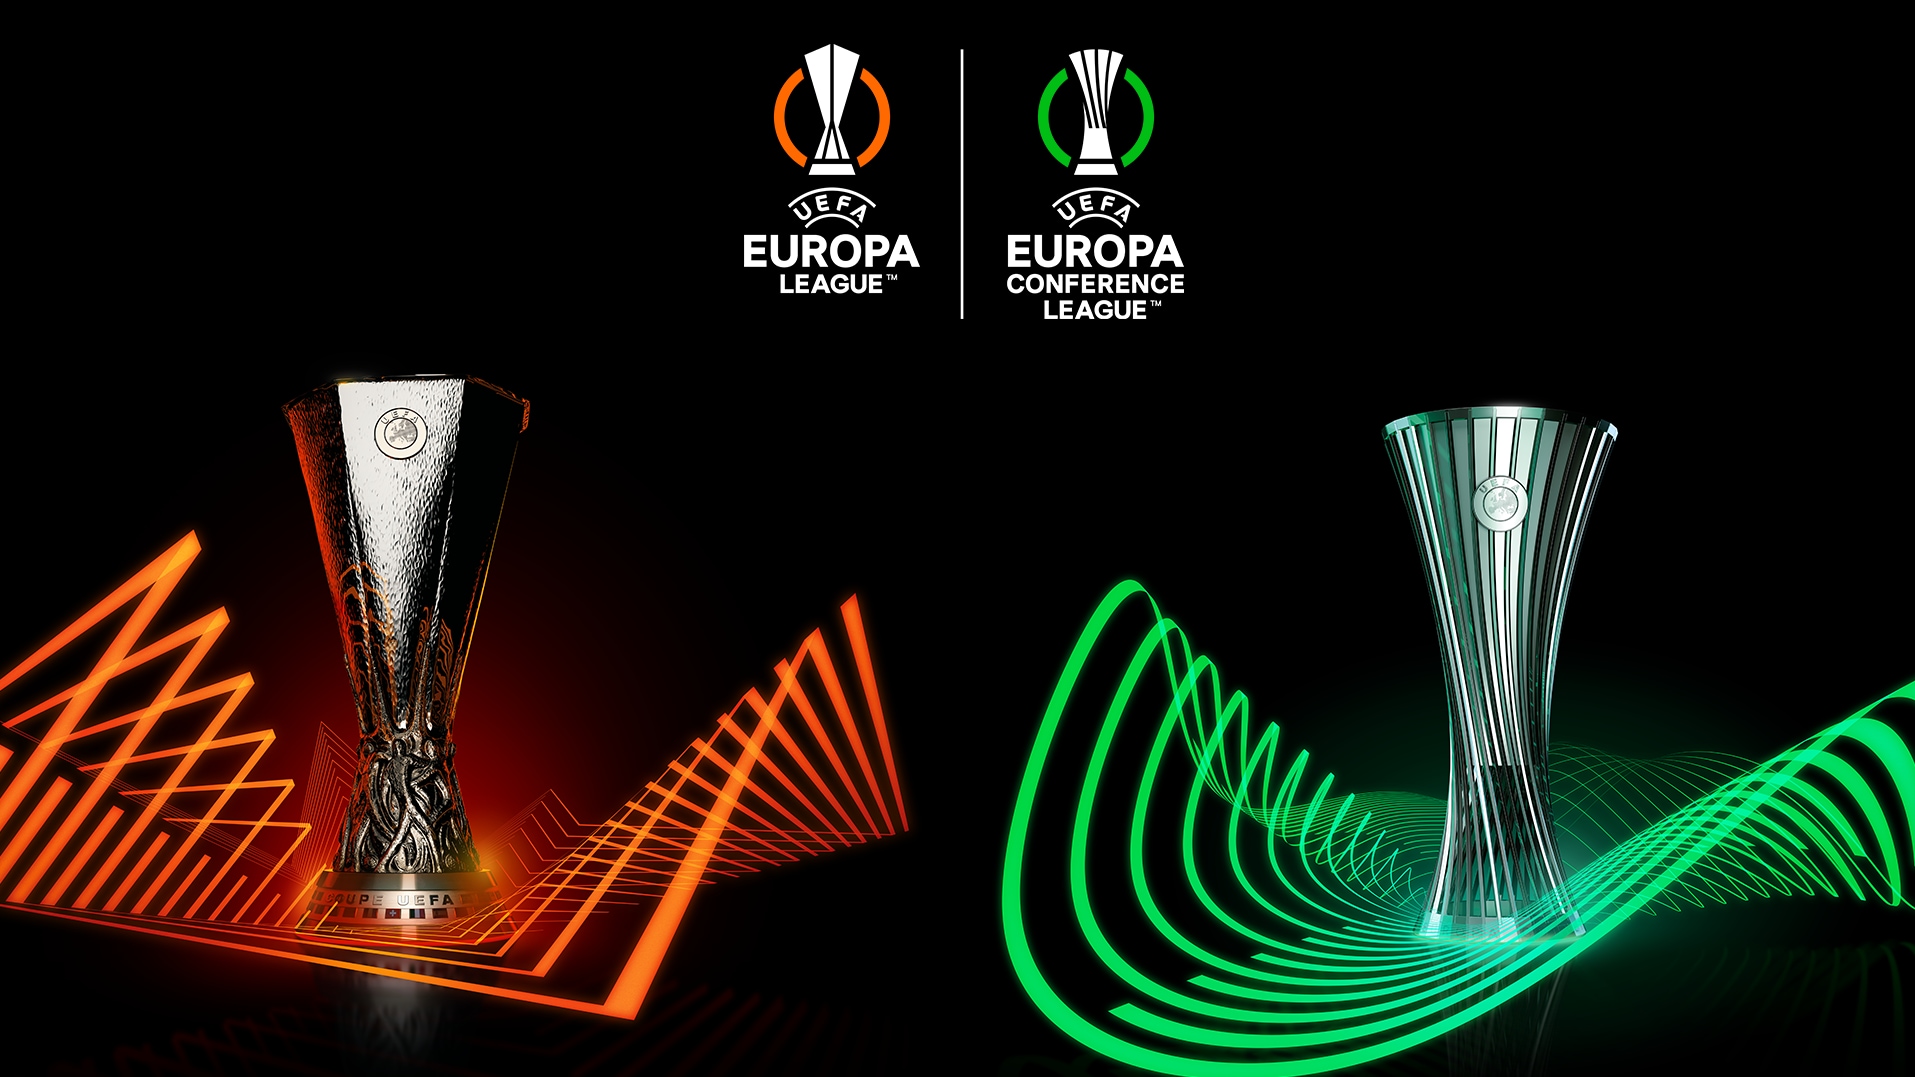 Desvelado el trofeo de la UEFA Europa Conference League Sobre la UEFA